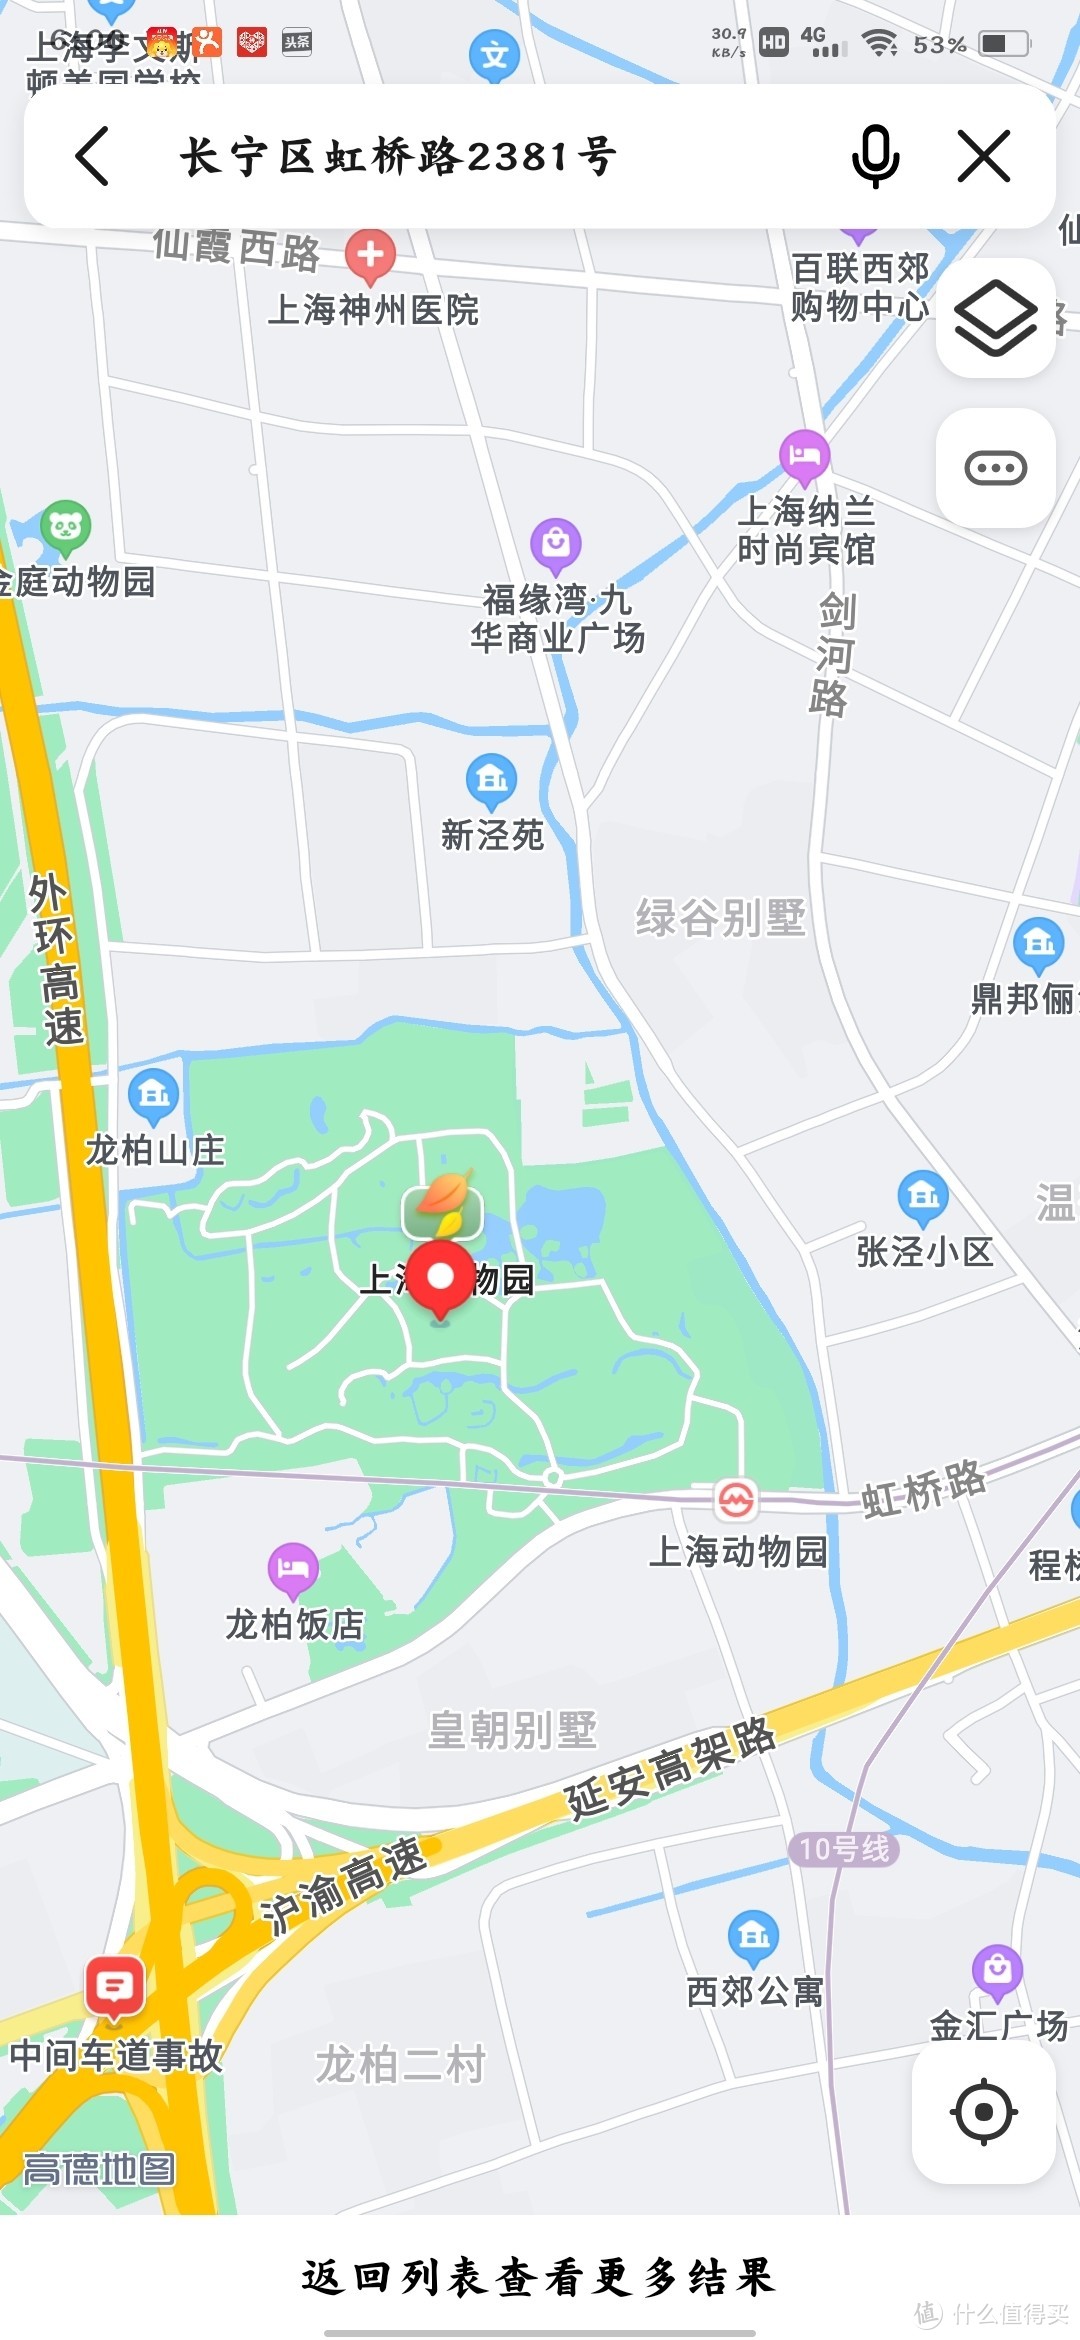 海上公园 篇十二:上海动物园游览记录,长宁区虹桥路2381号,始建于1954